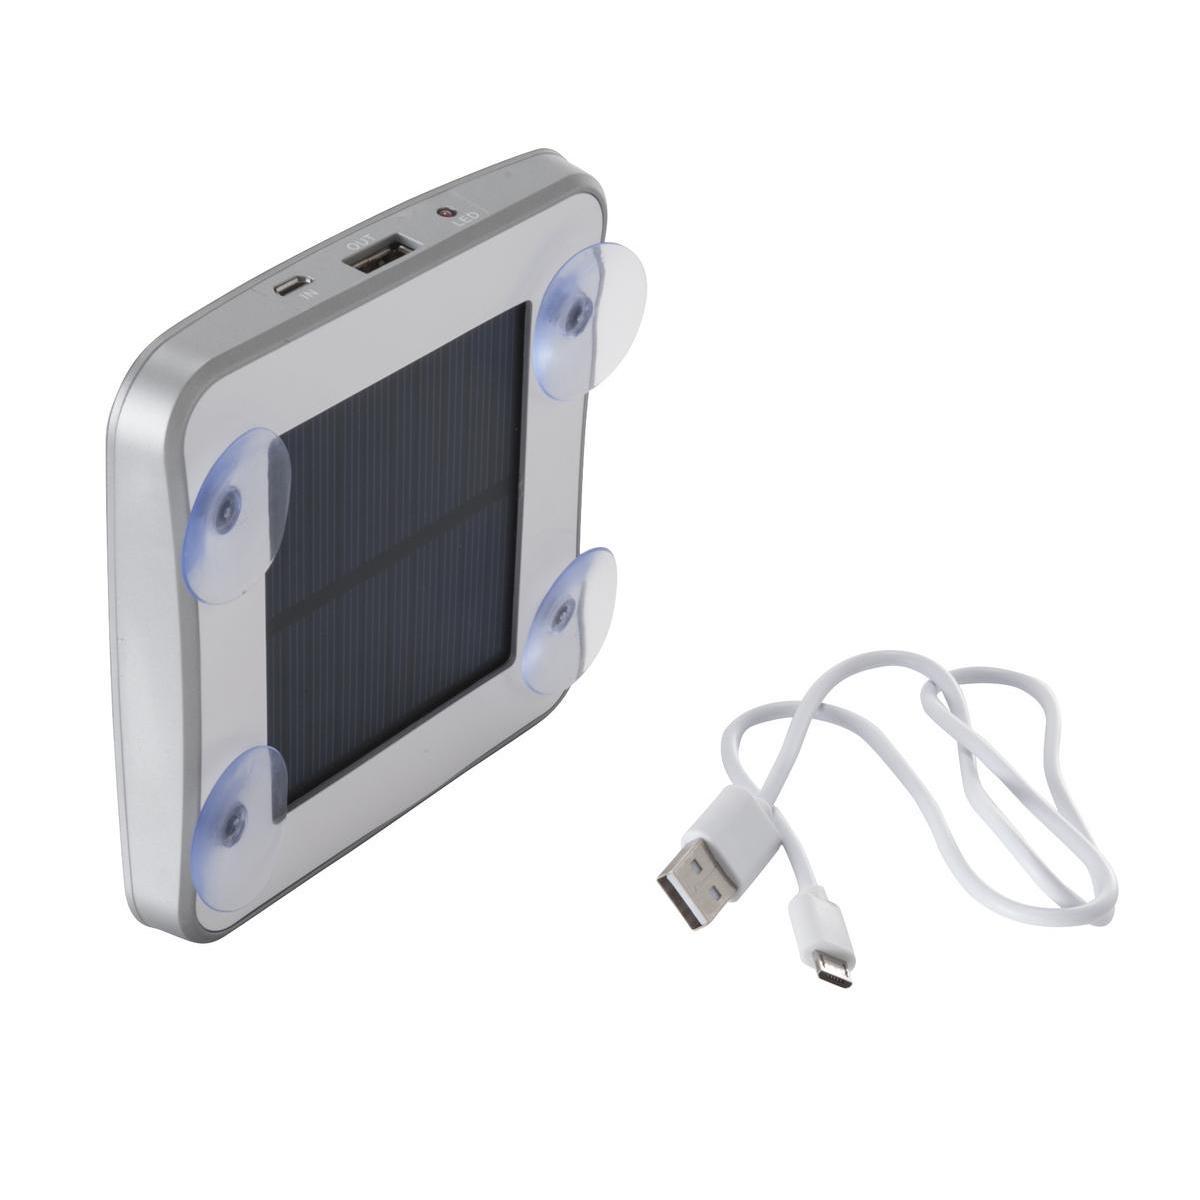 Batterie externe rechargeable solaire - Panneau solaire et ABS - 11,8 x 1,8 x H 11,8 cm - Gris